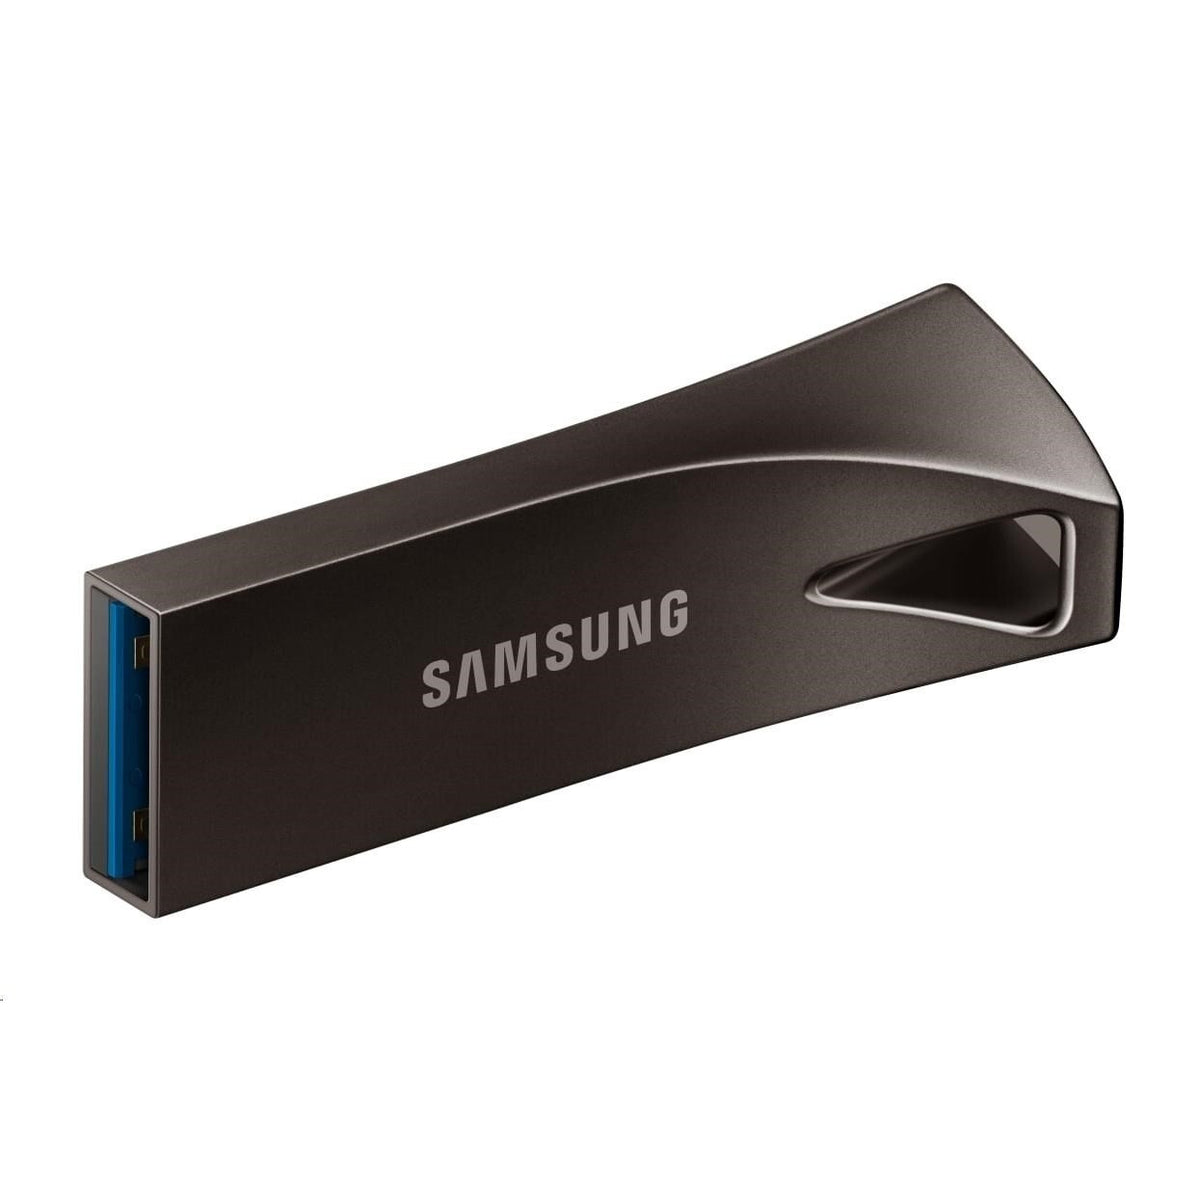 USB kľúč 128GB Samsung, 3.1 (MUF-128BE4/APC)